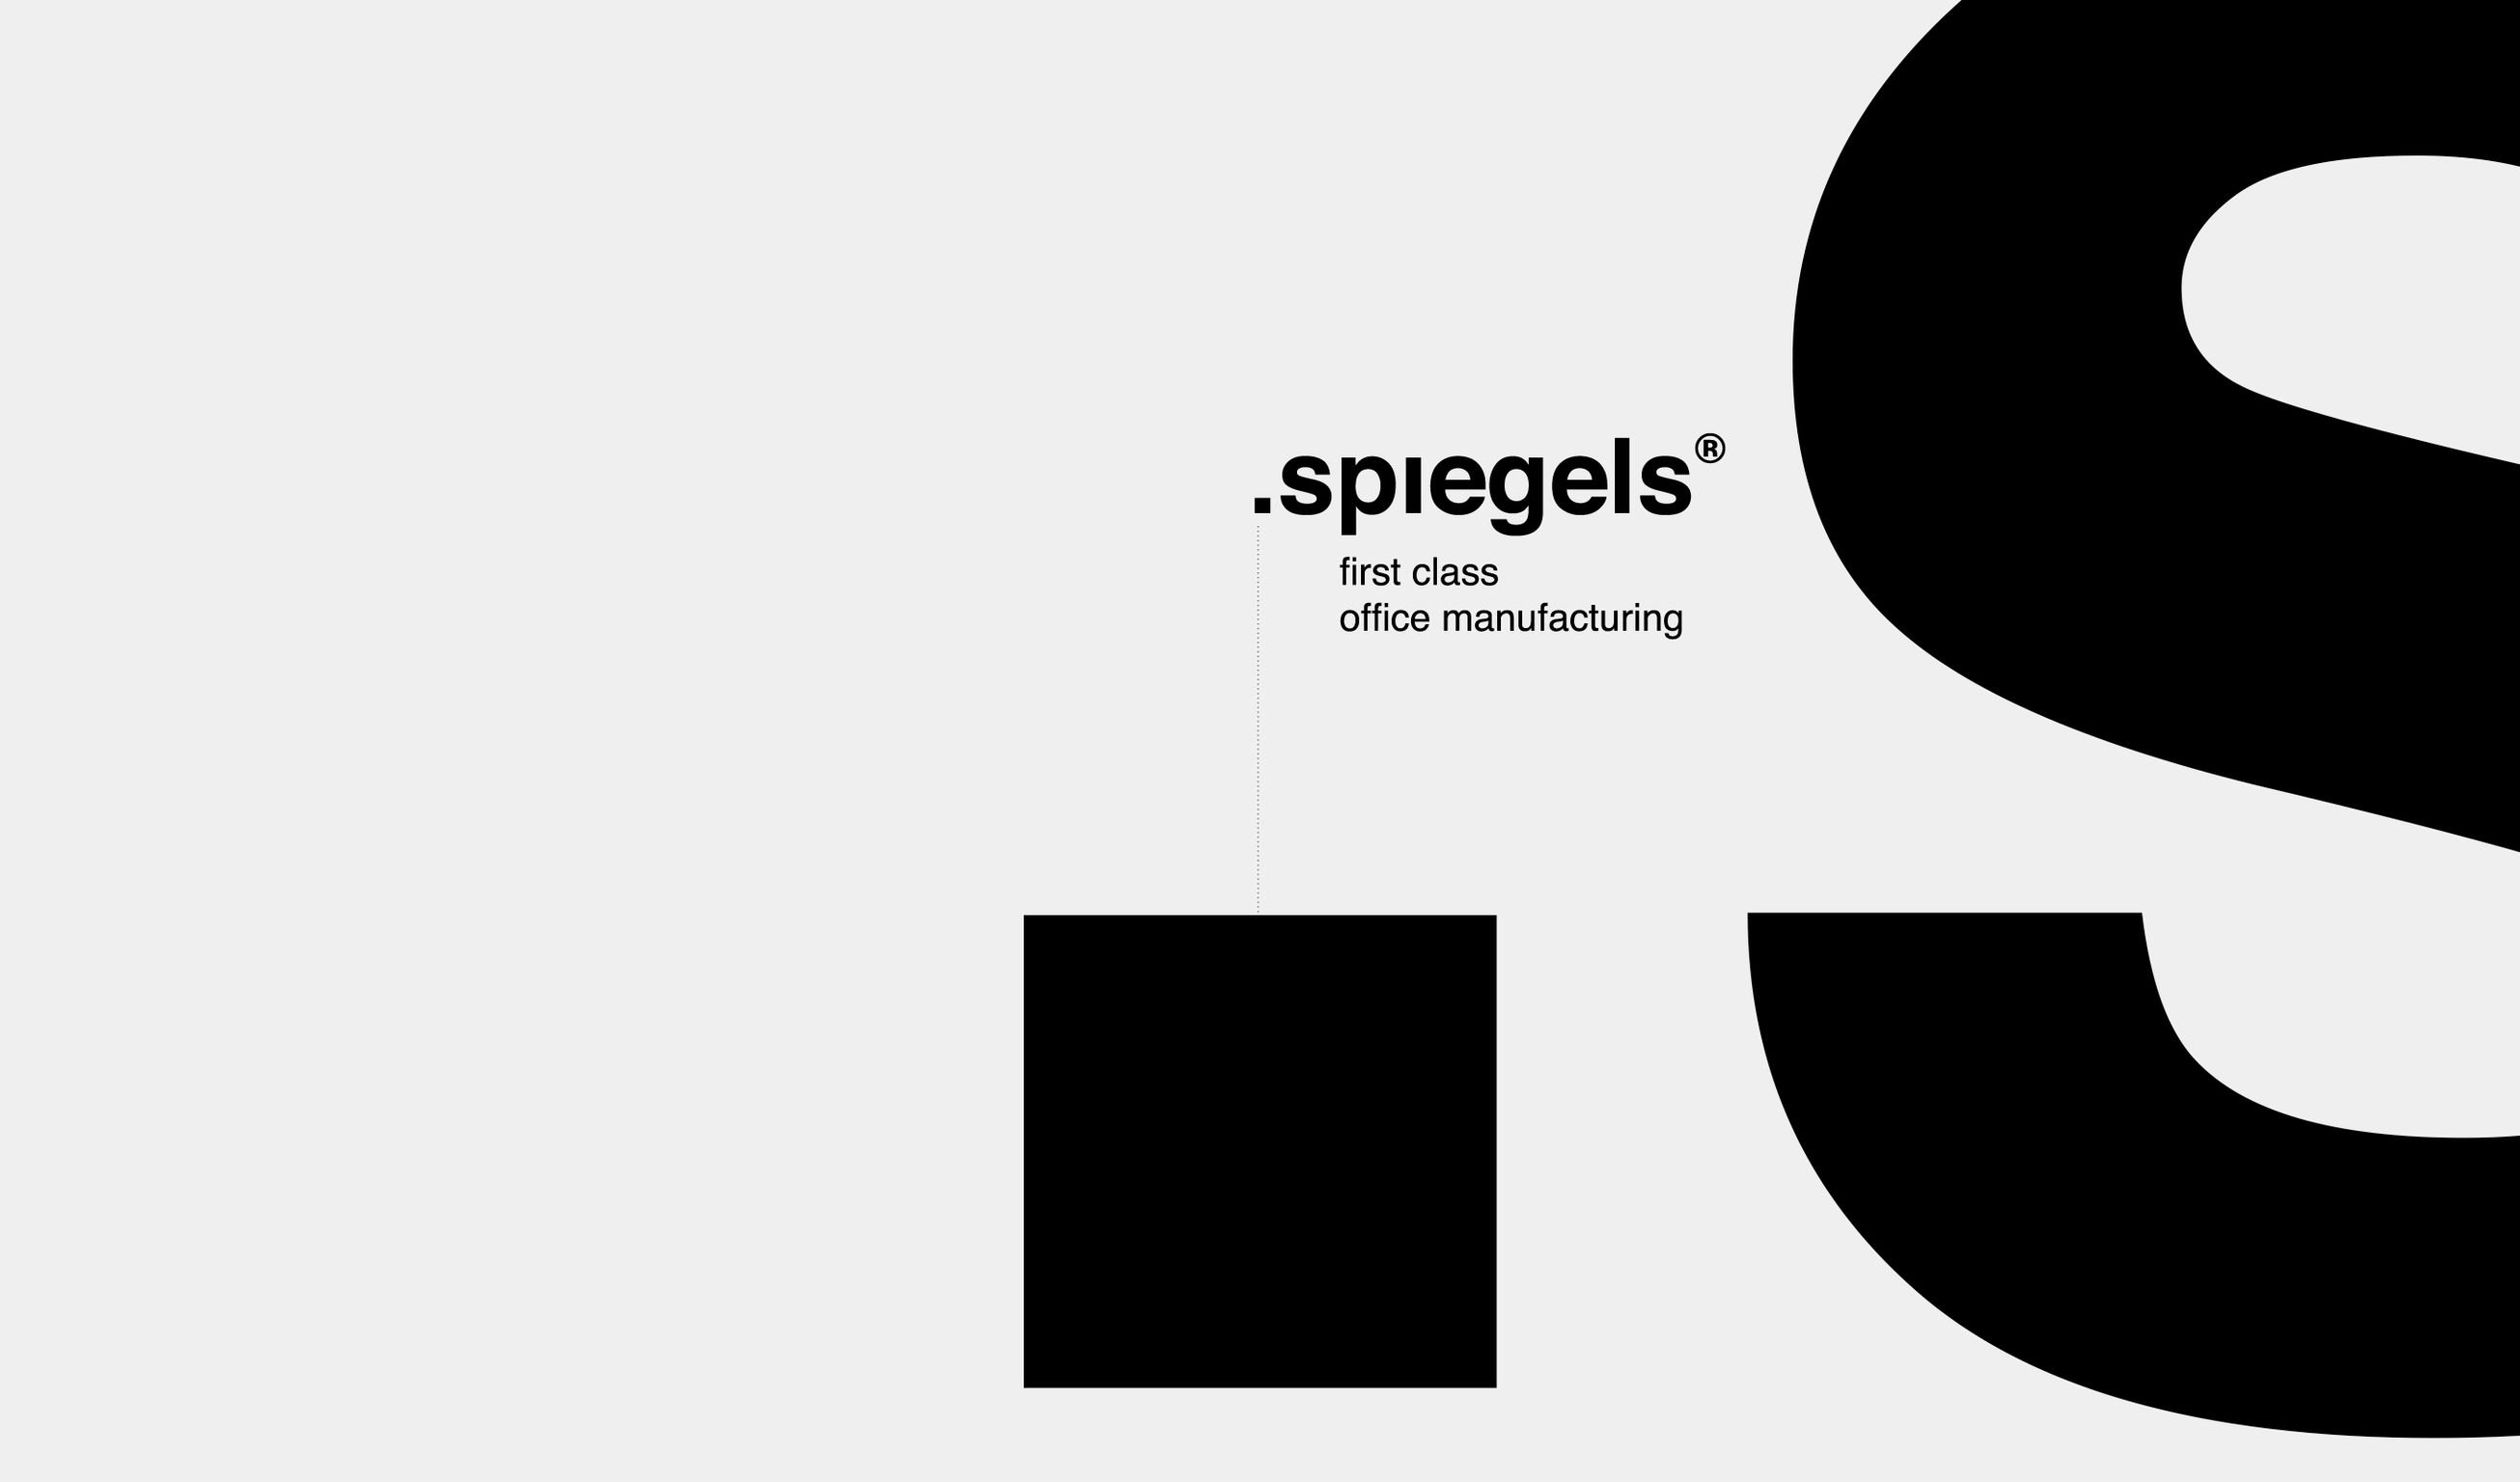 spiegels GmbH & Co. KG